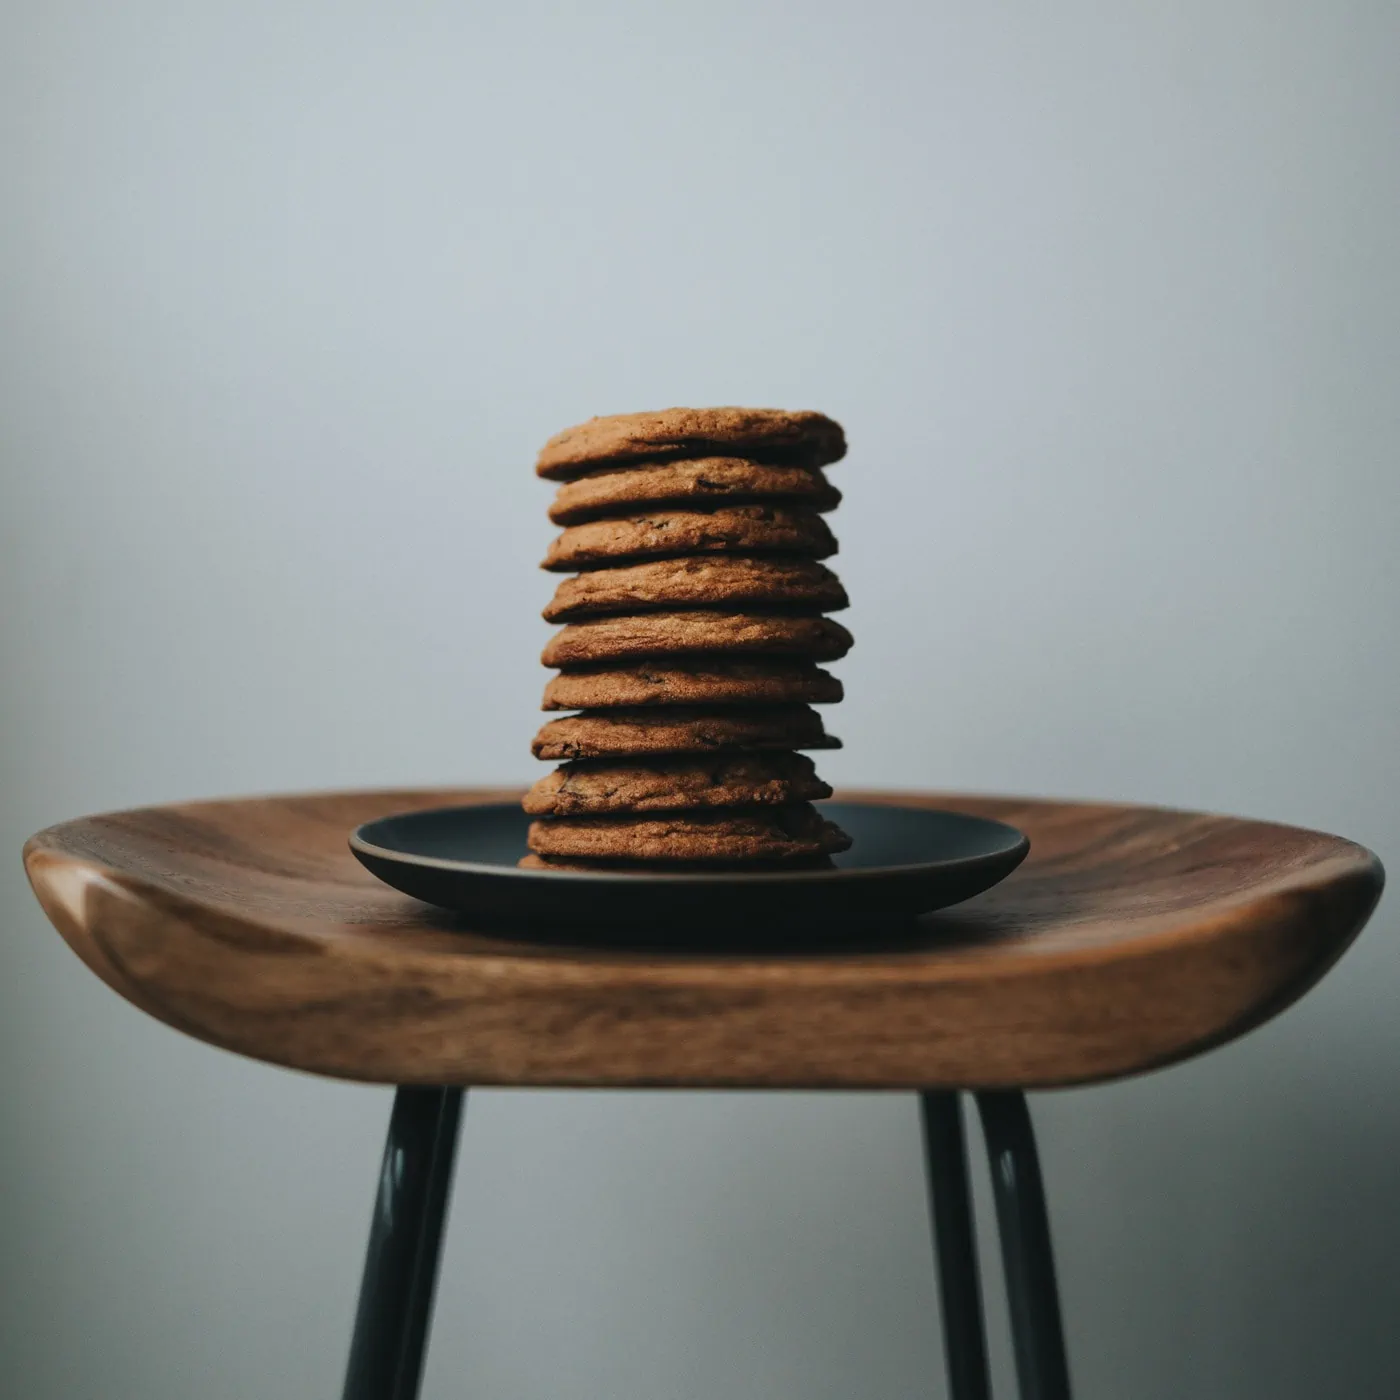 Köstliche Idee für Muttertags-Wochenende: Chocolate-Chip-Cookies mit Cynthia Barcomi backen // HIMBEER